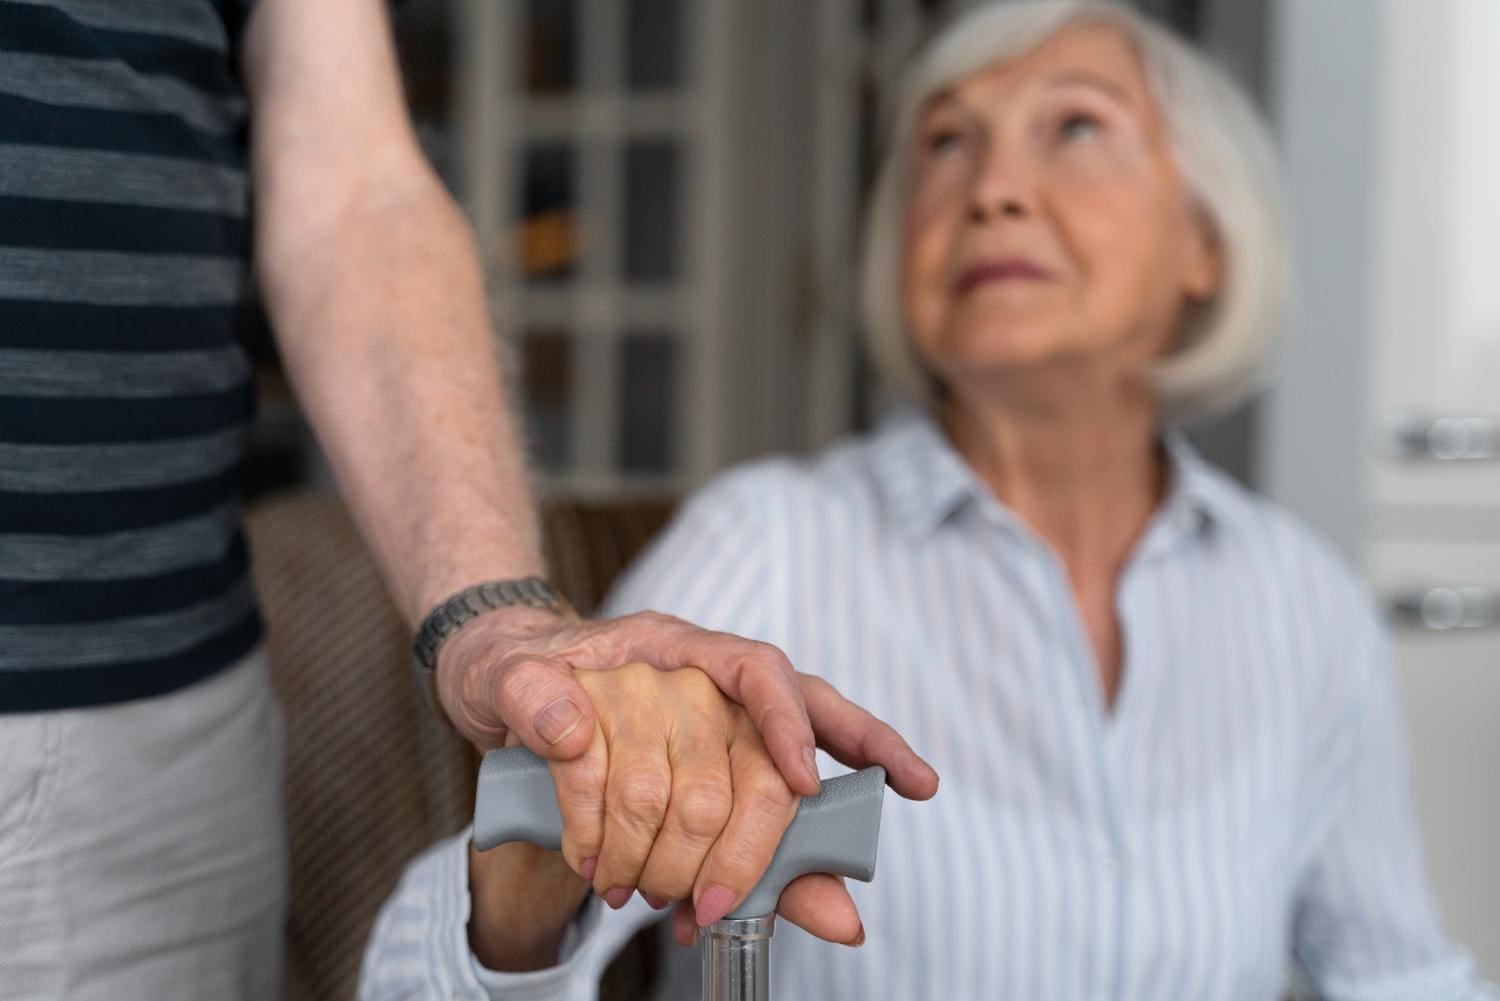 Os pacientes com a doença de Parkinson sofrem com tremores no corpo, rigidez muscular e dificuldade de equilíbrio e coordenação